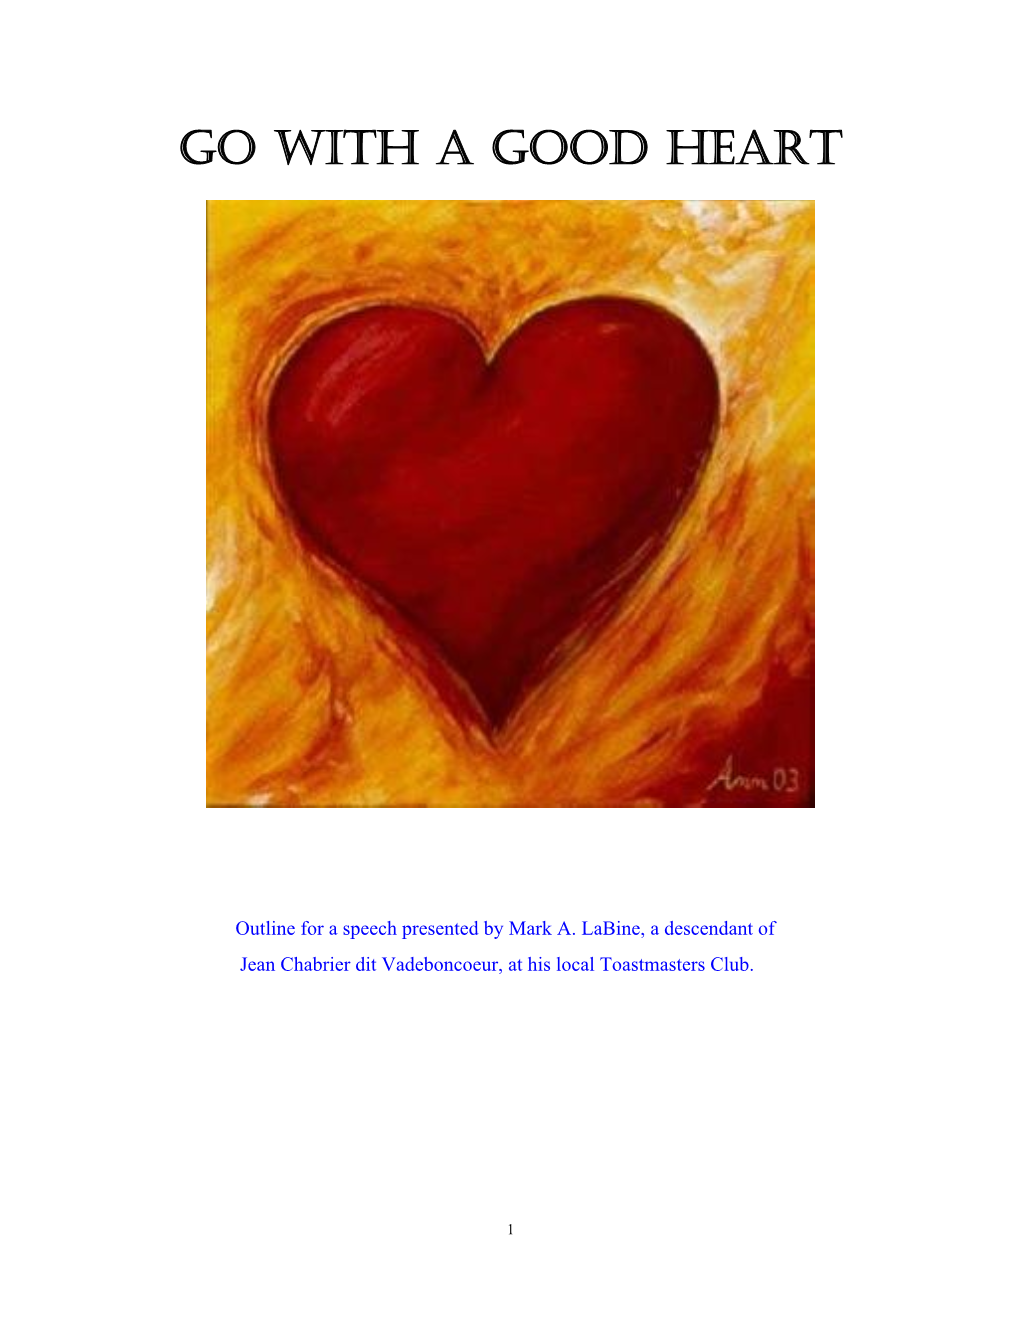 Go with a Good Heart